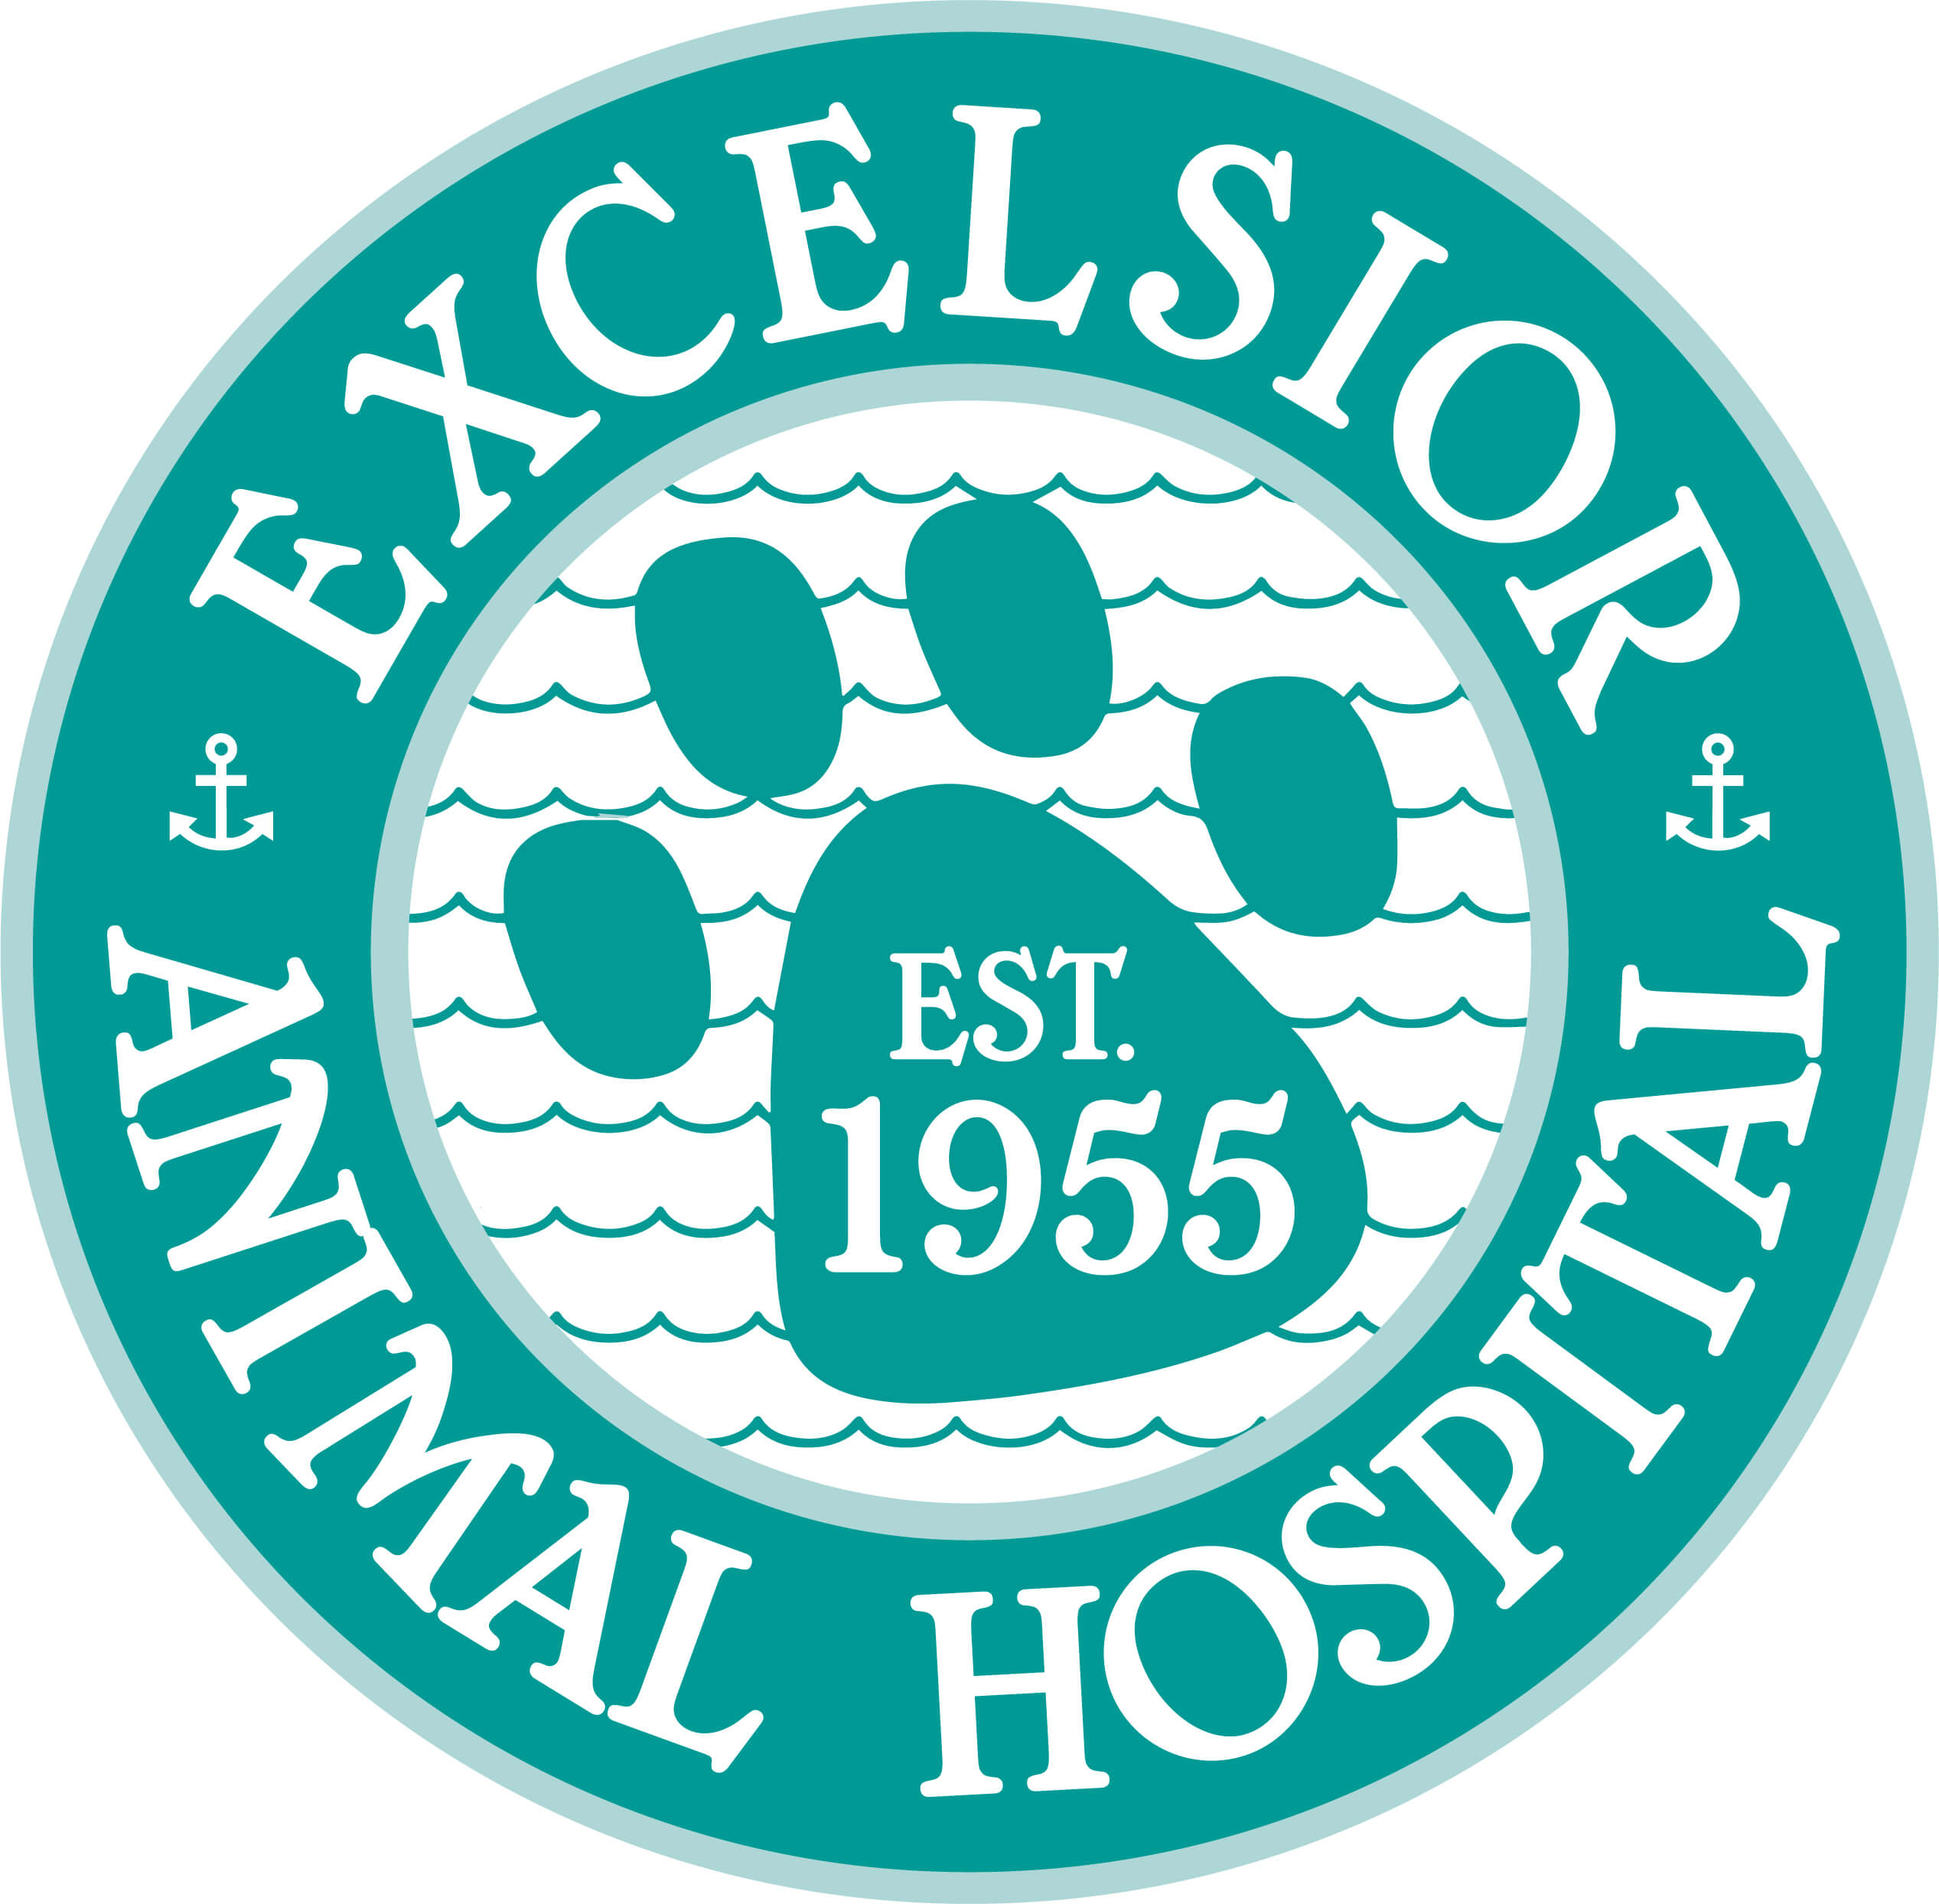 171-Excelsior-Animal-Hospital-WEB